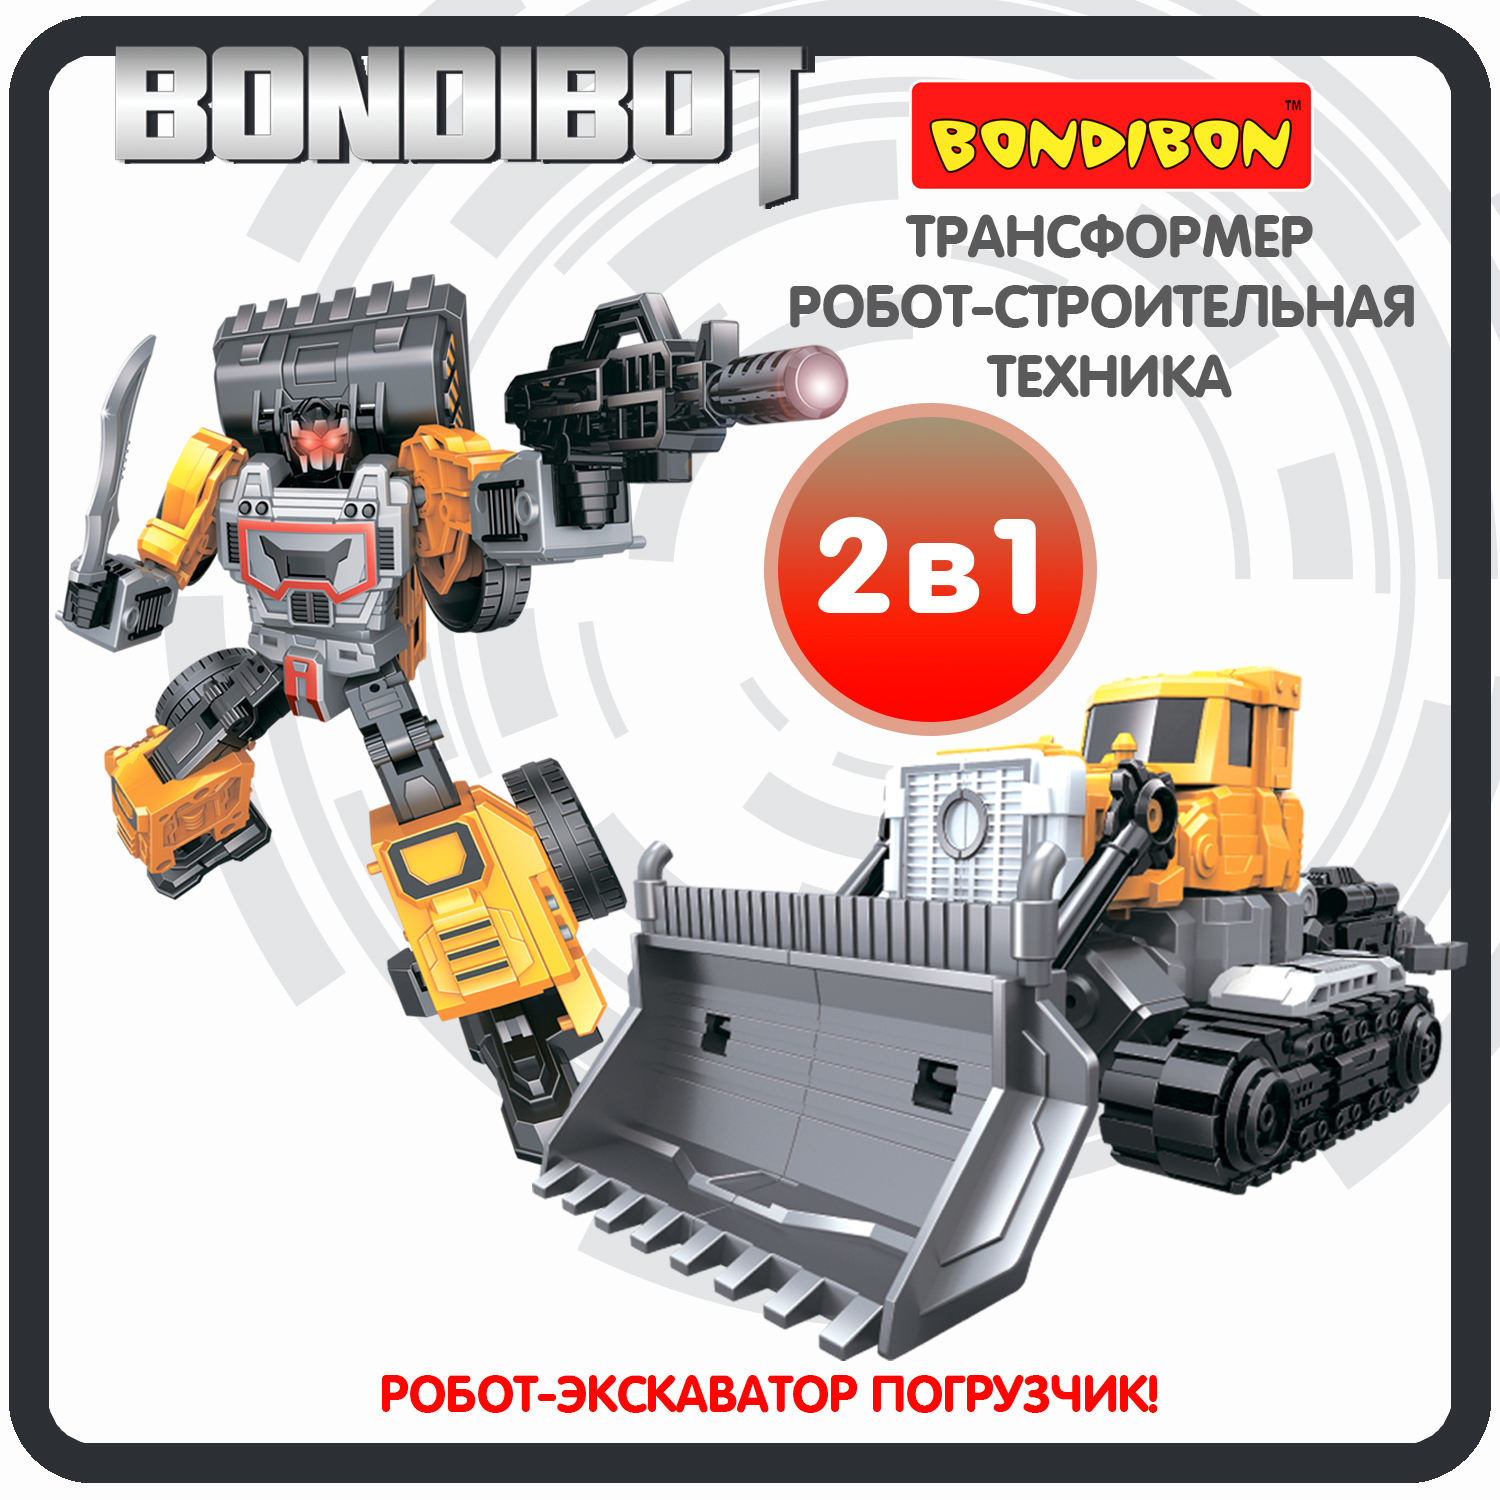 Трансформер строительная техника, 2в1 BONDIBOT Bondibon, экскаватор-погрузчик / ВВ6045 bondibon трансформер bondibot 2 в 1 робот экскаватор